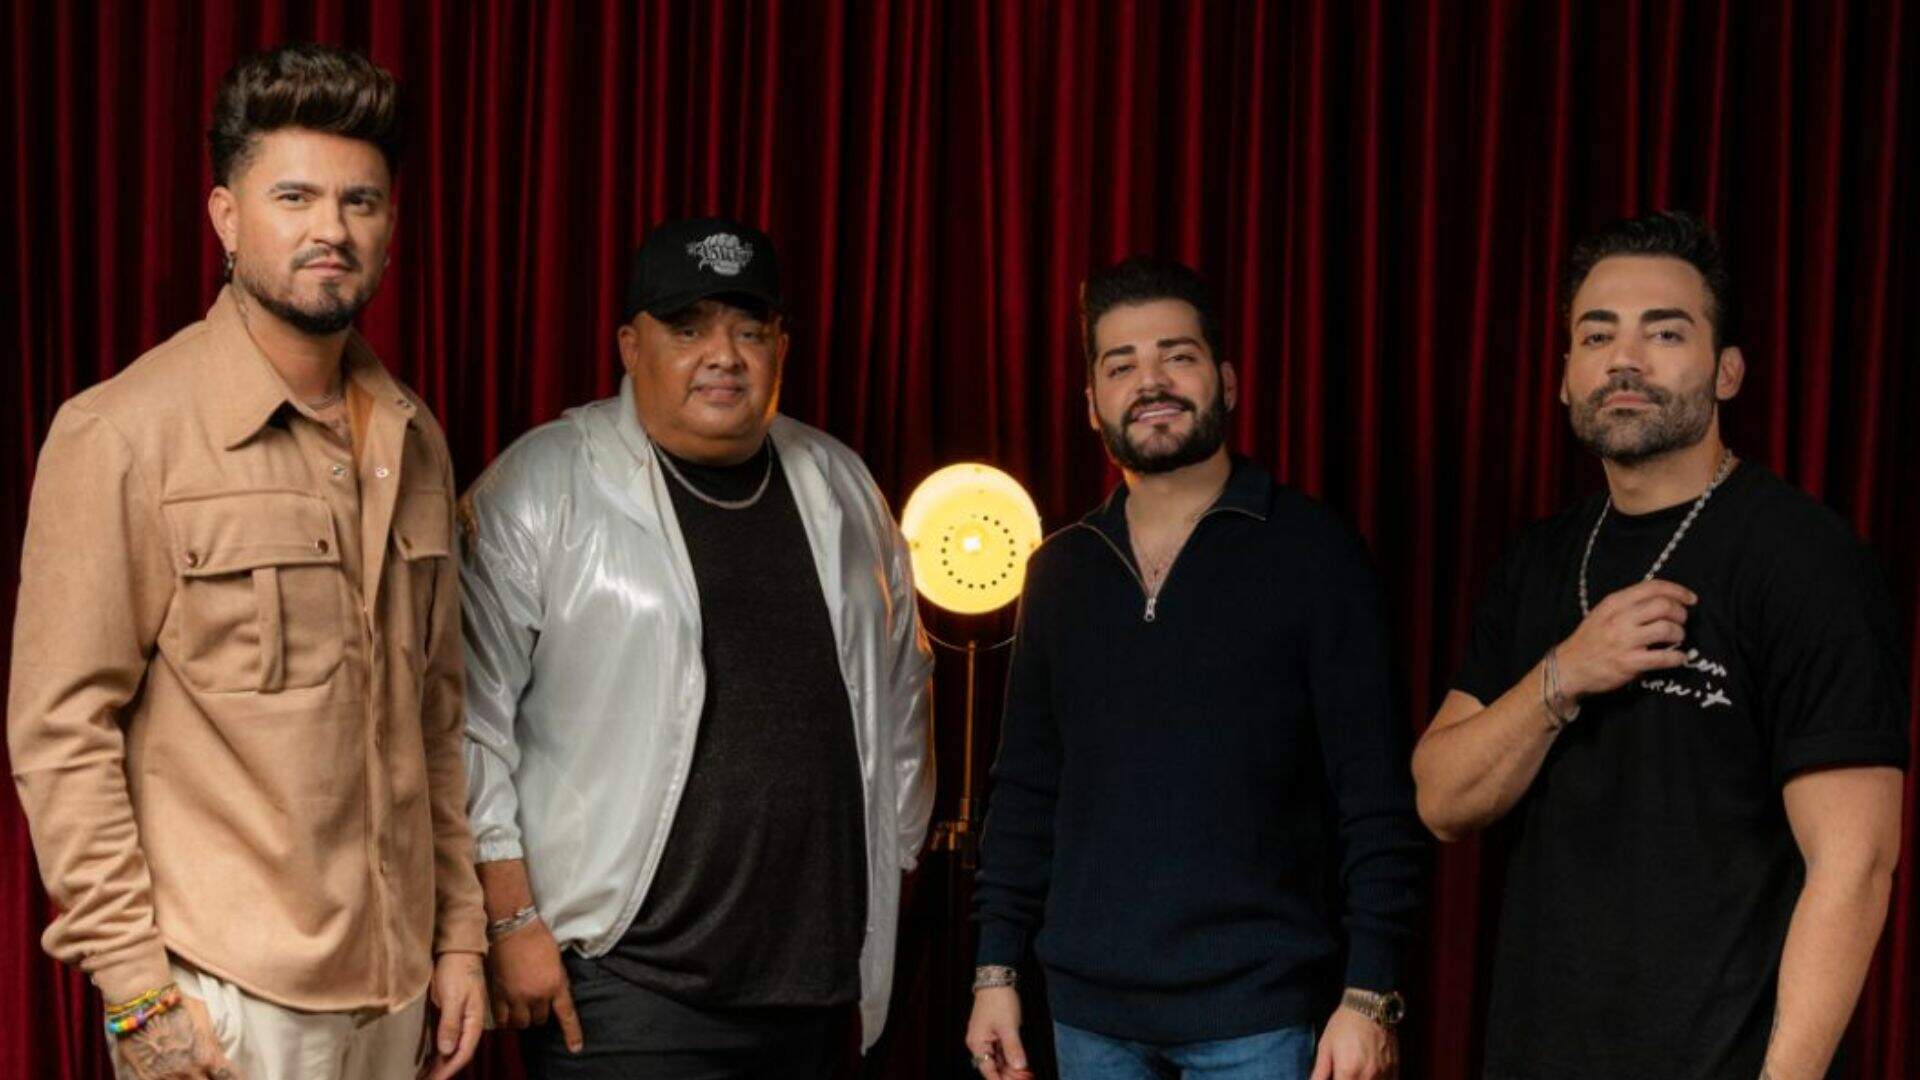 Humberto & Ronaldo liberam single com Guilherme & Benuto, “Pretinha” - Metropolitana FM